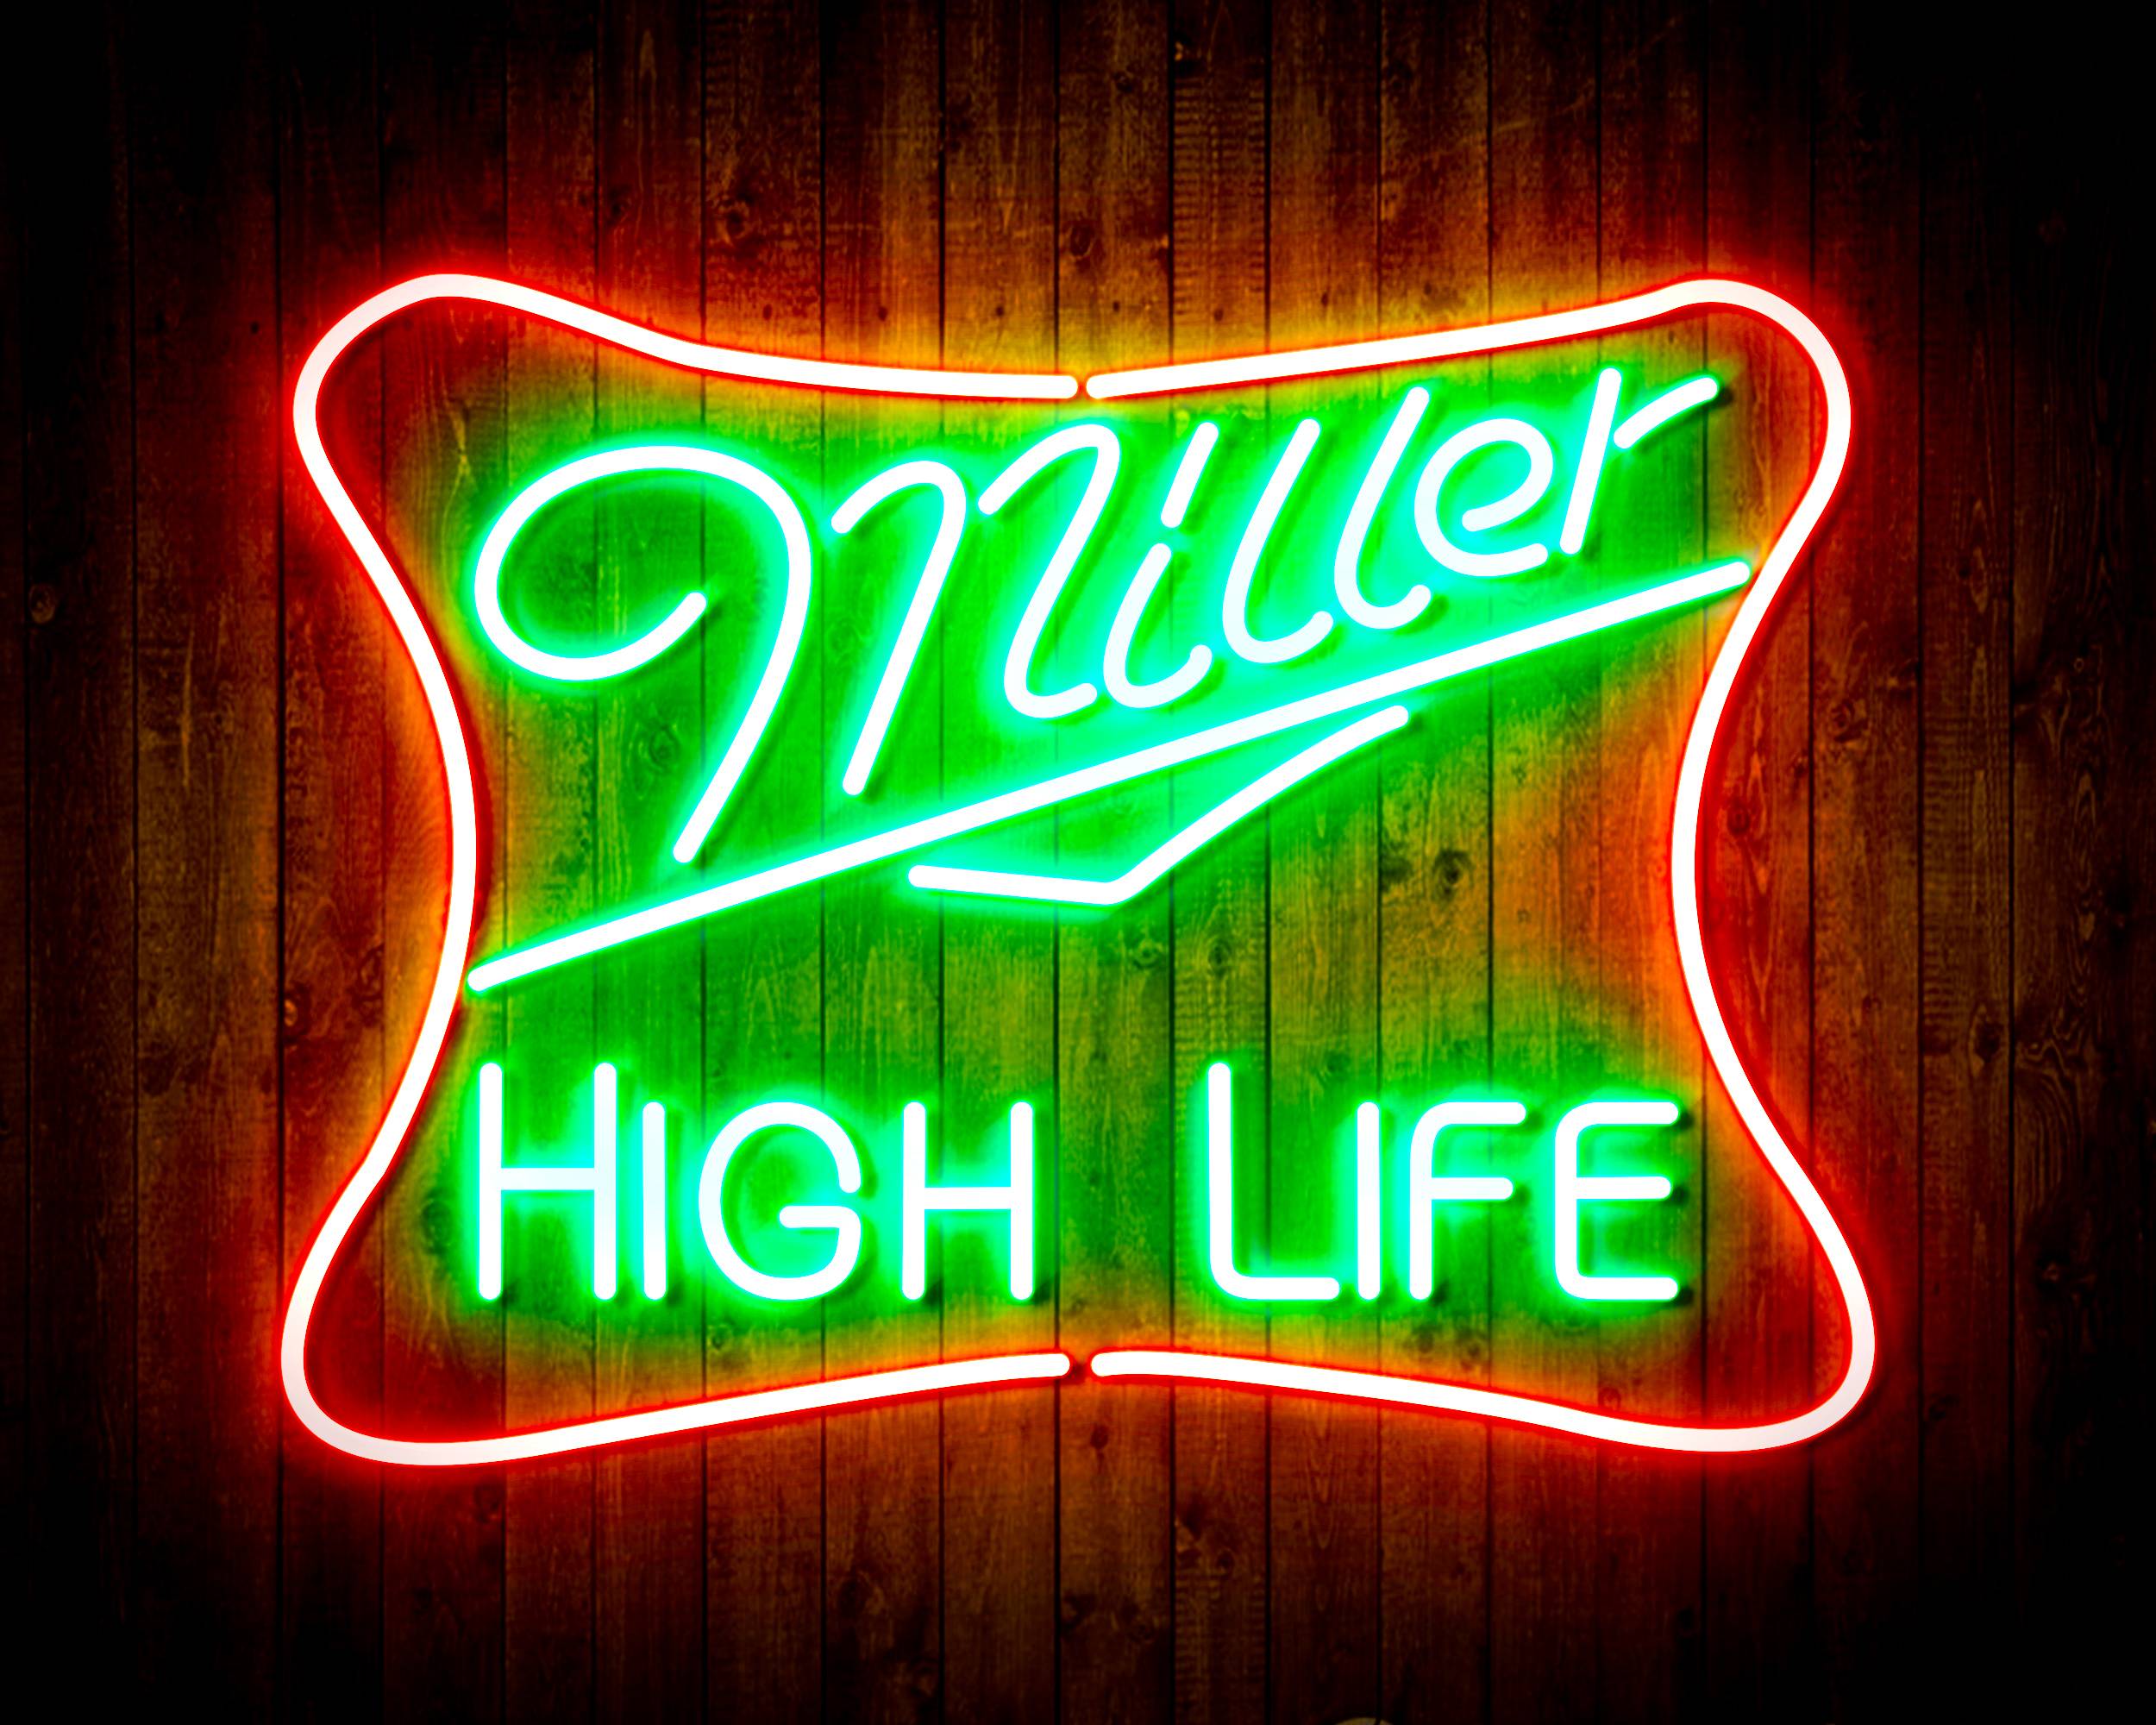 Miller High Life Handmade Neon Flex LED Sign